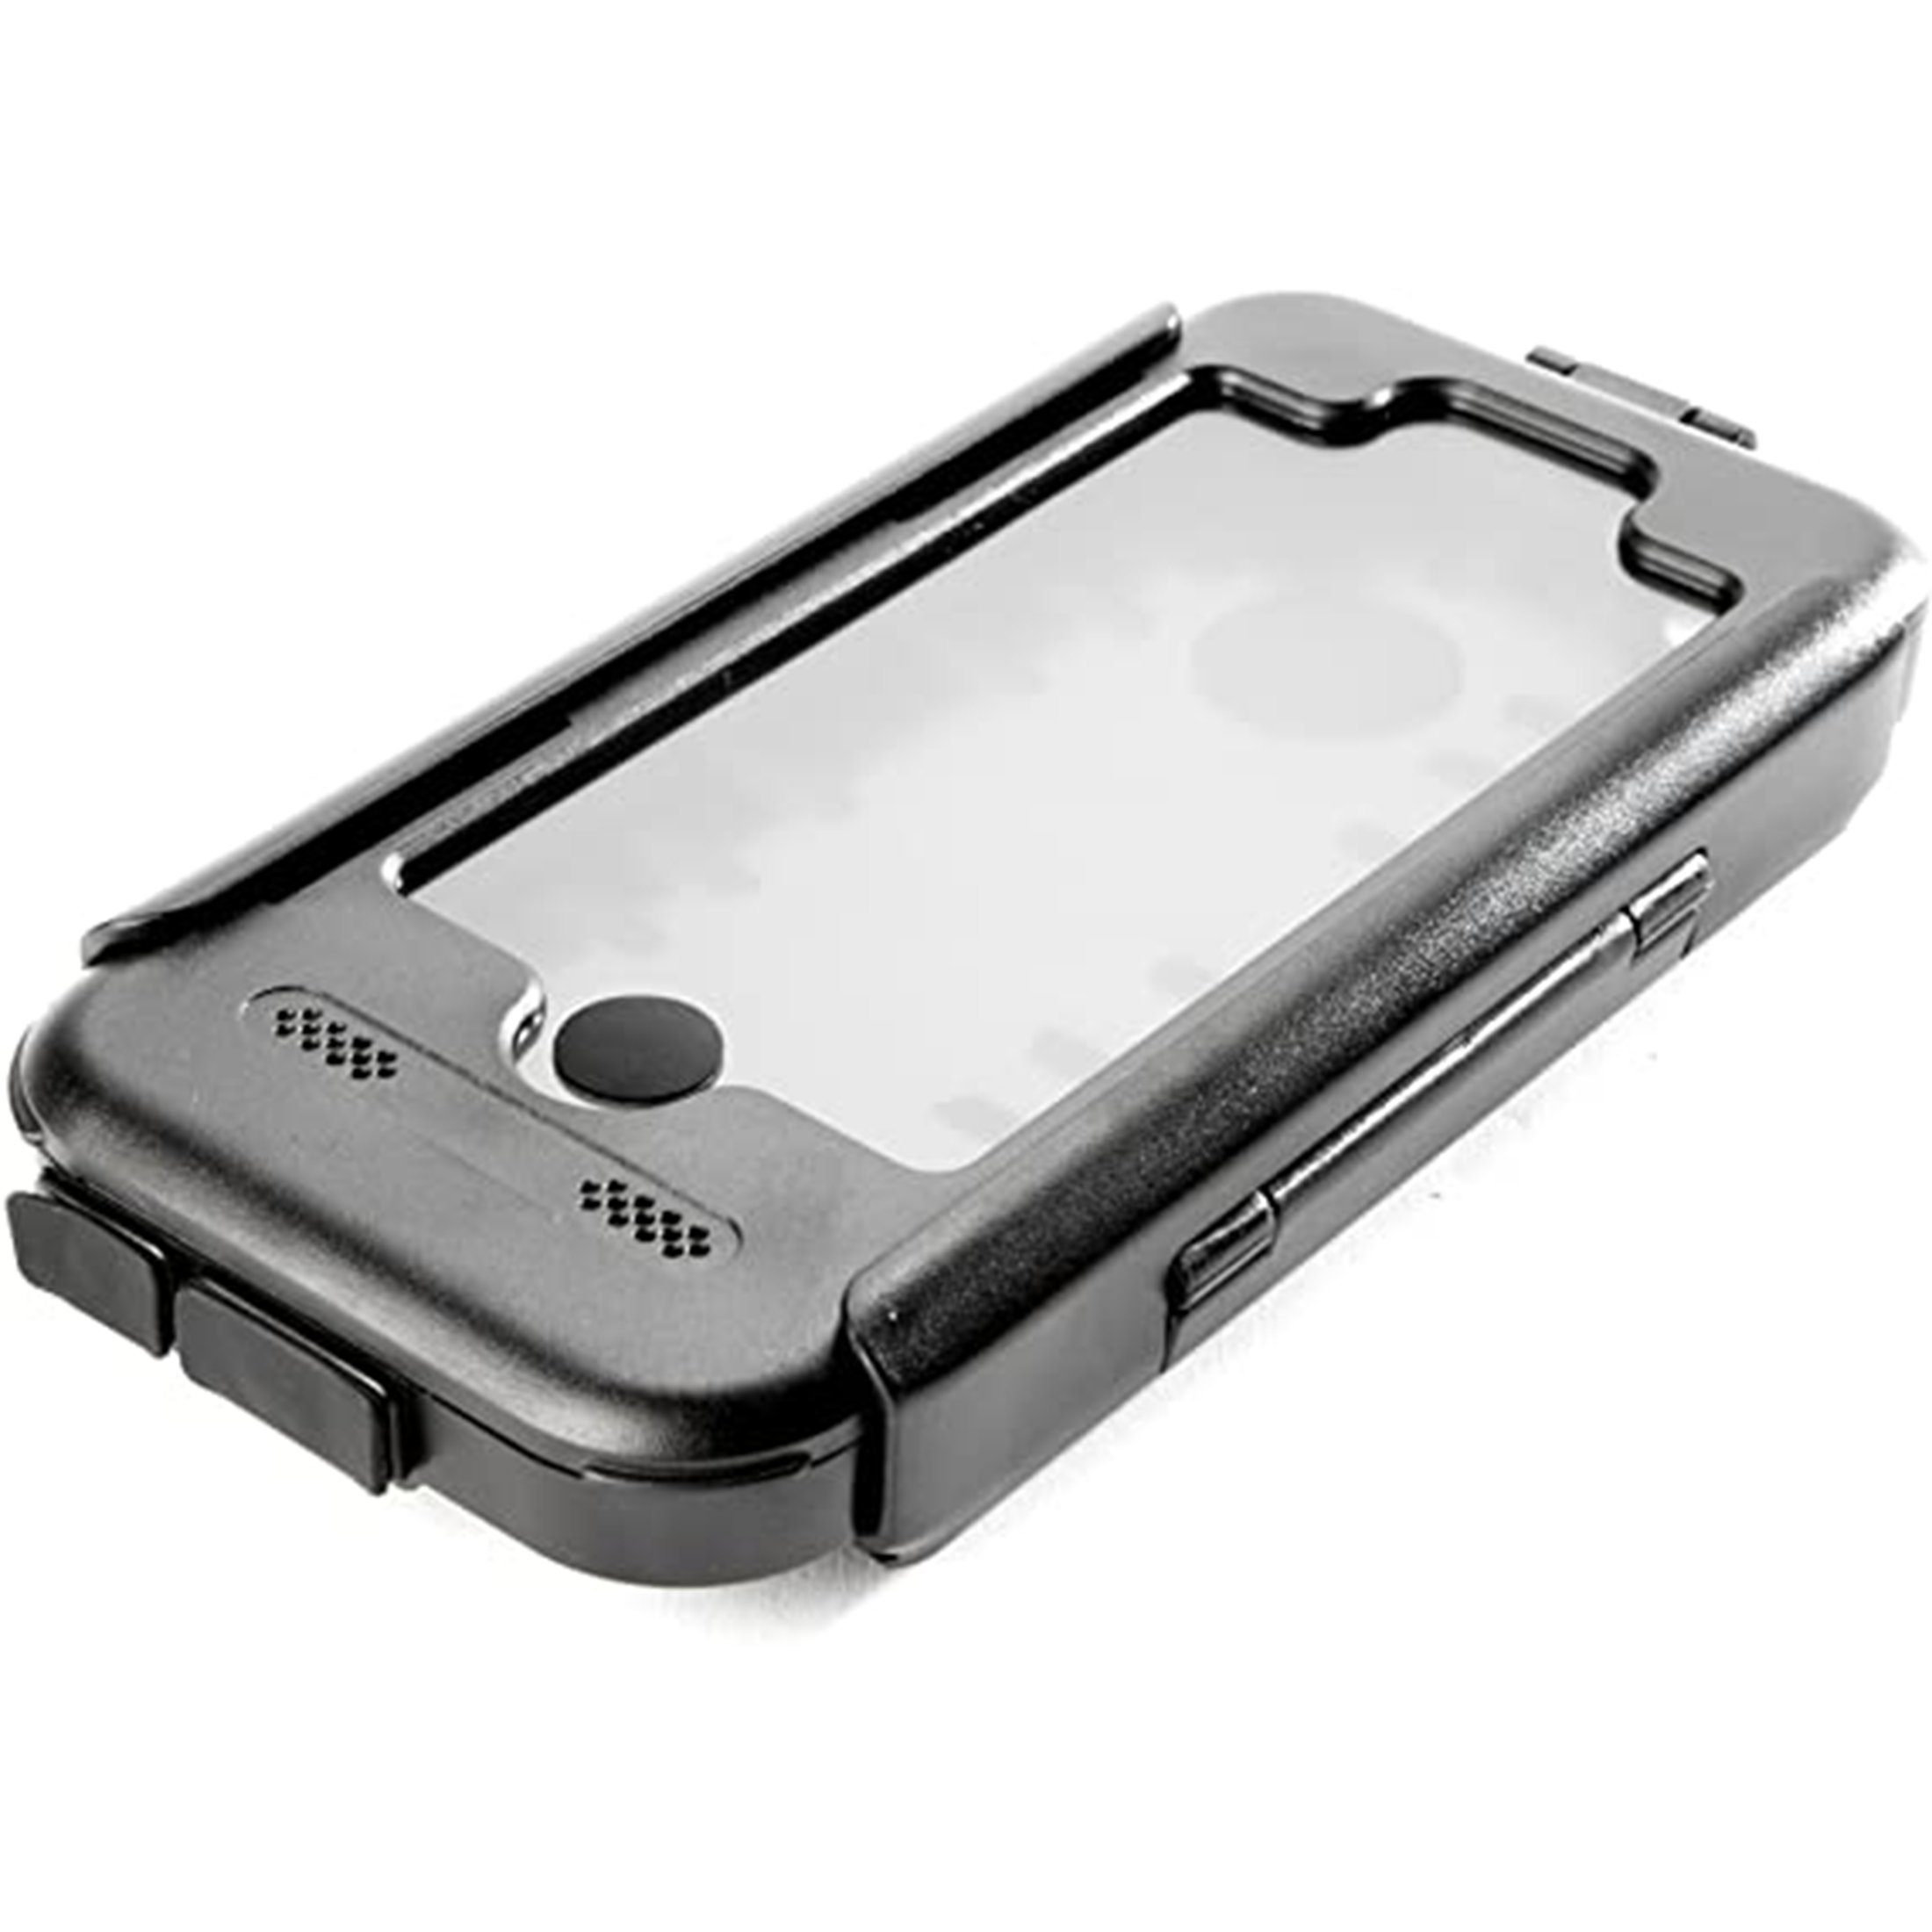 Zoomyo Fahrradhalter Tigra Sport Bike Console Bike Mount Fahrradhalterung für iPhone 5/5S, 5C, iPhone 4/4S und Galaxy S4, Spritzwasserschutz